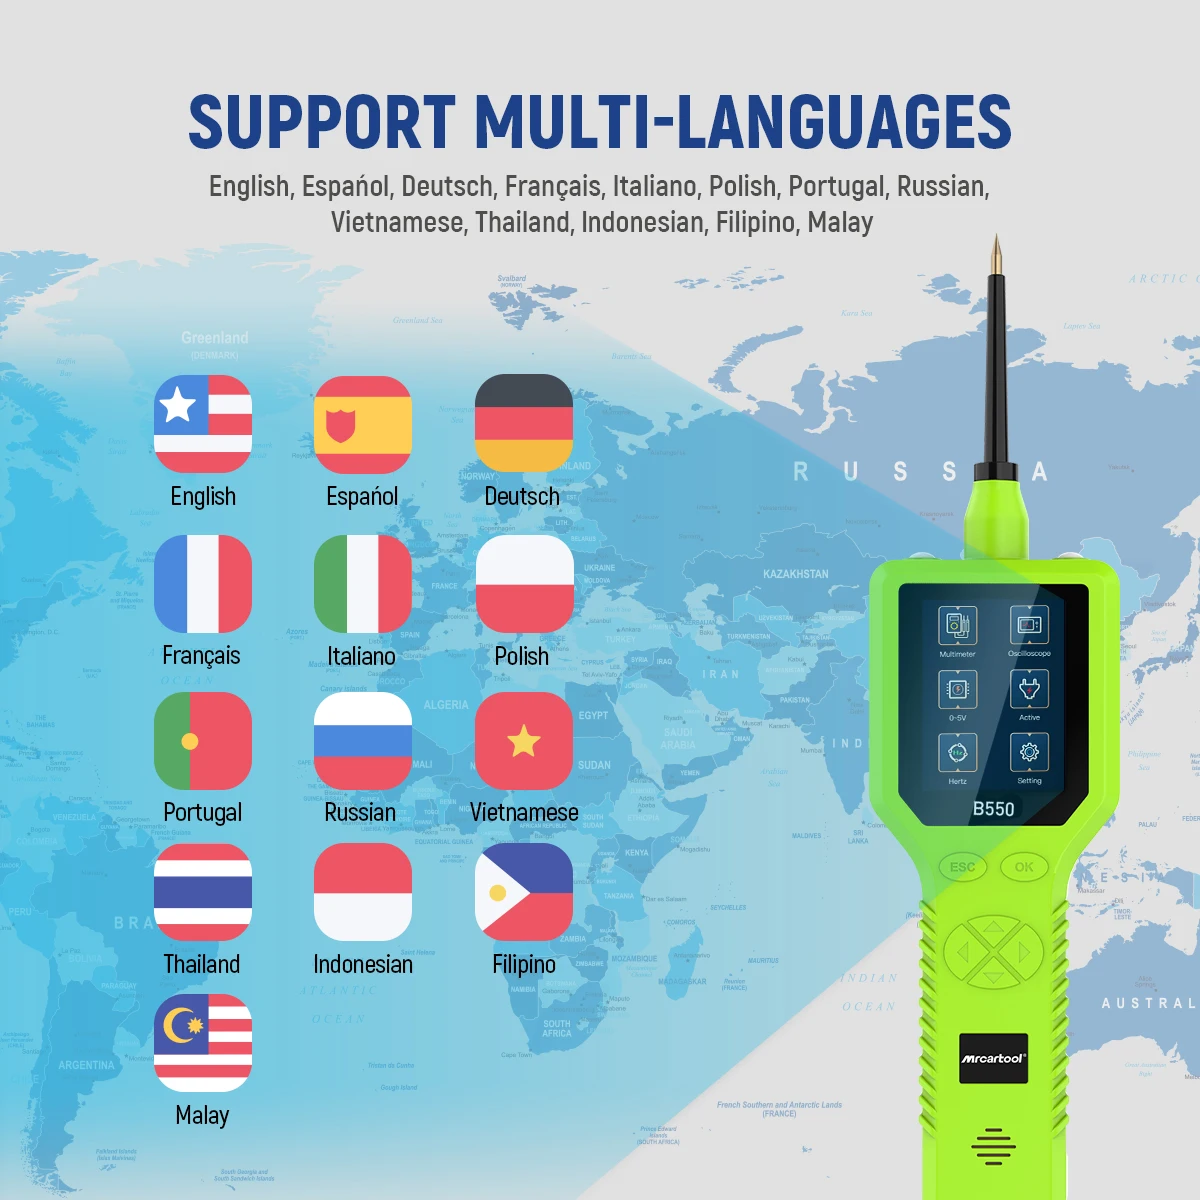 support multi-languages